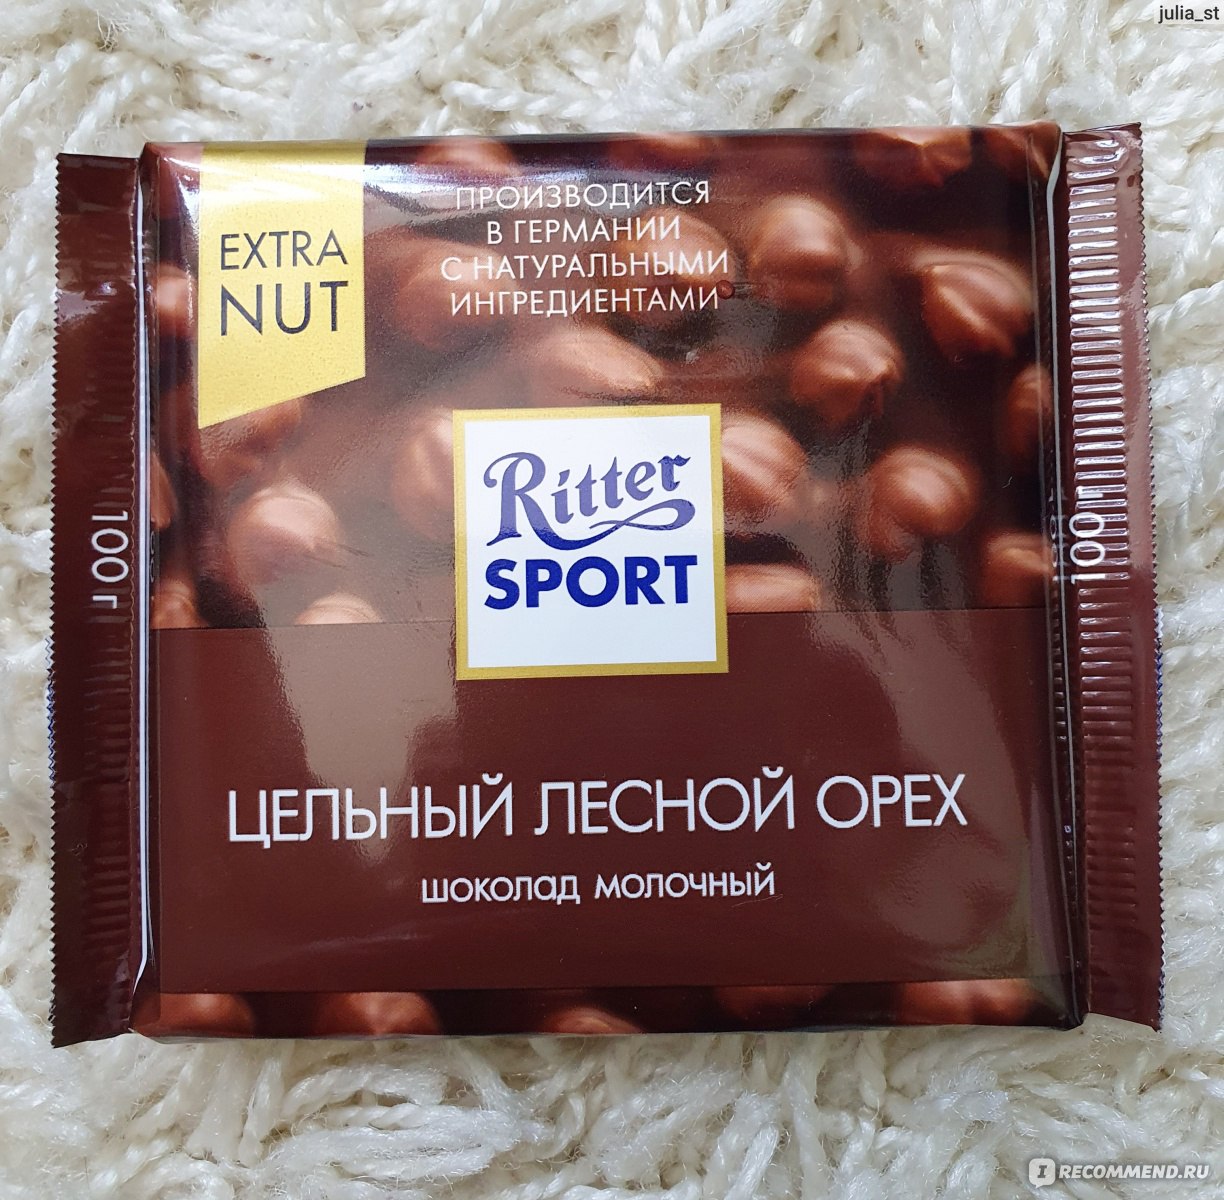 Молочный шоколад с цельным фундуком Ритер спорт